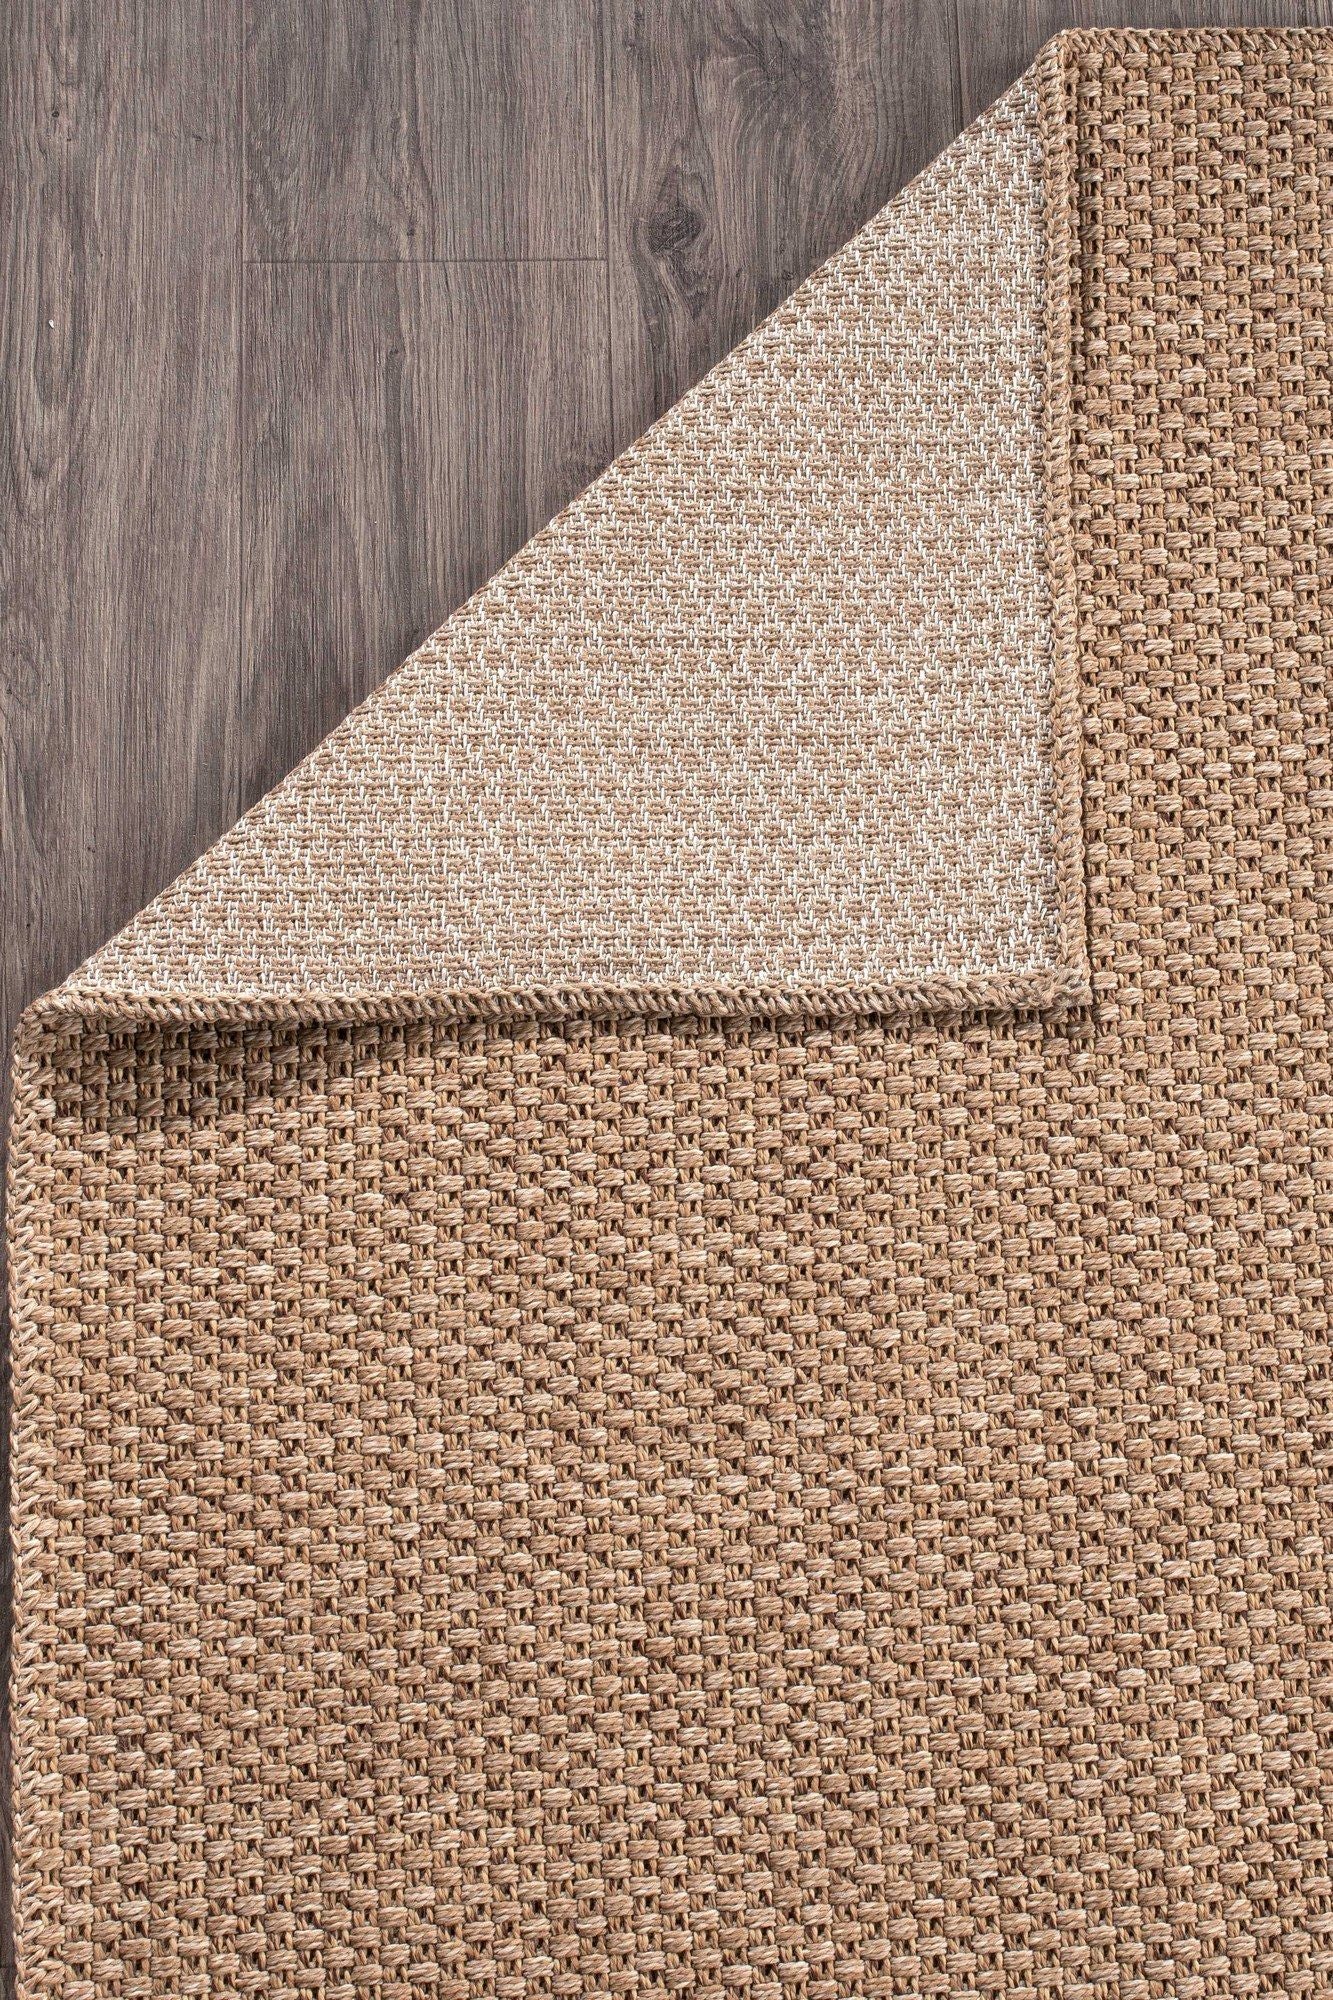 Rusticana 3101 - Hall Carpet (120 x 200)